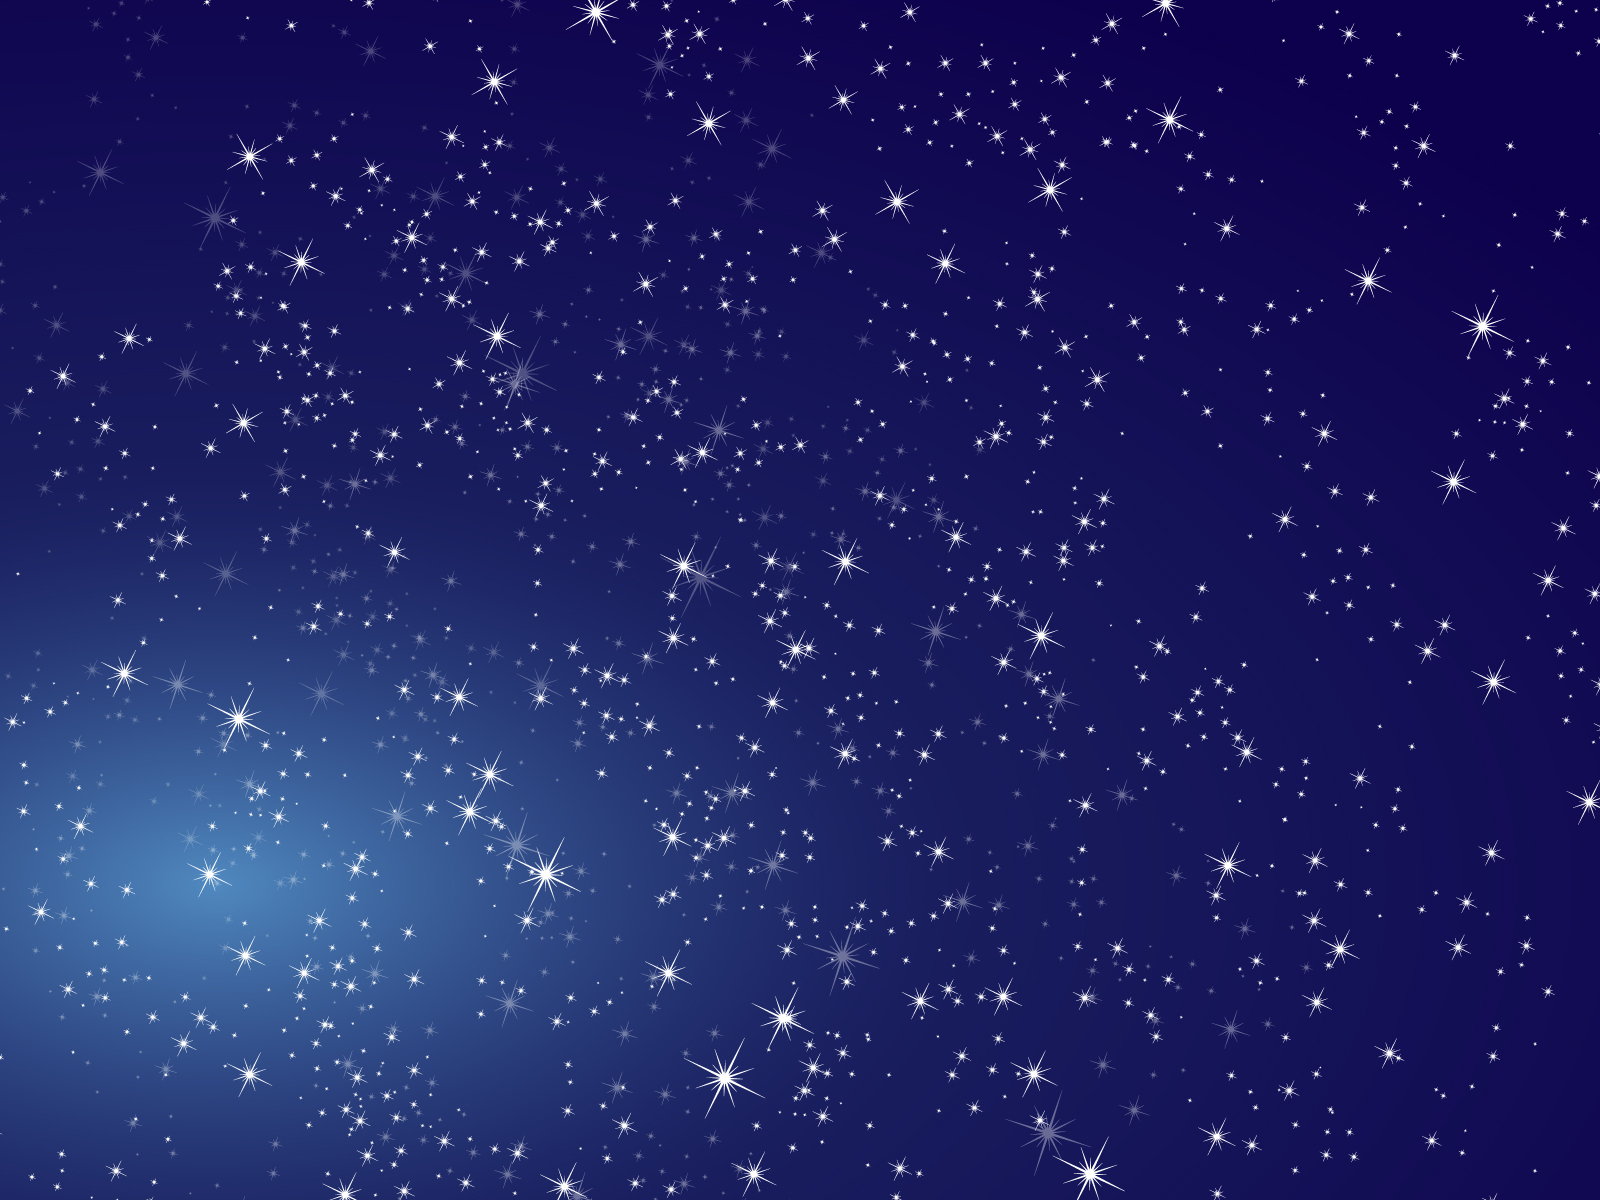 《4月11日》「星のお兄さんのプラネタリウムショー」開催☆星について楽しく学ぼう♪【琵琶湖マリオットホテル】